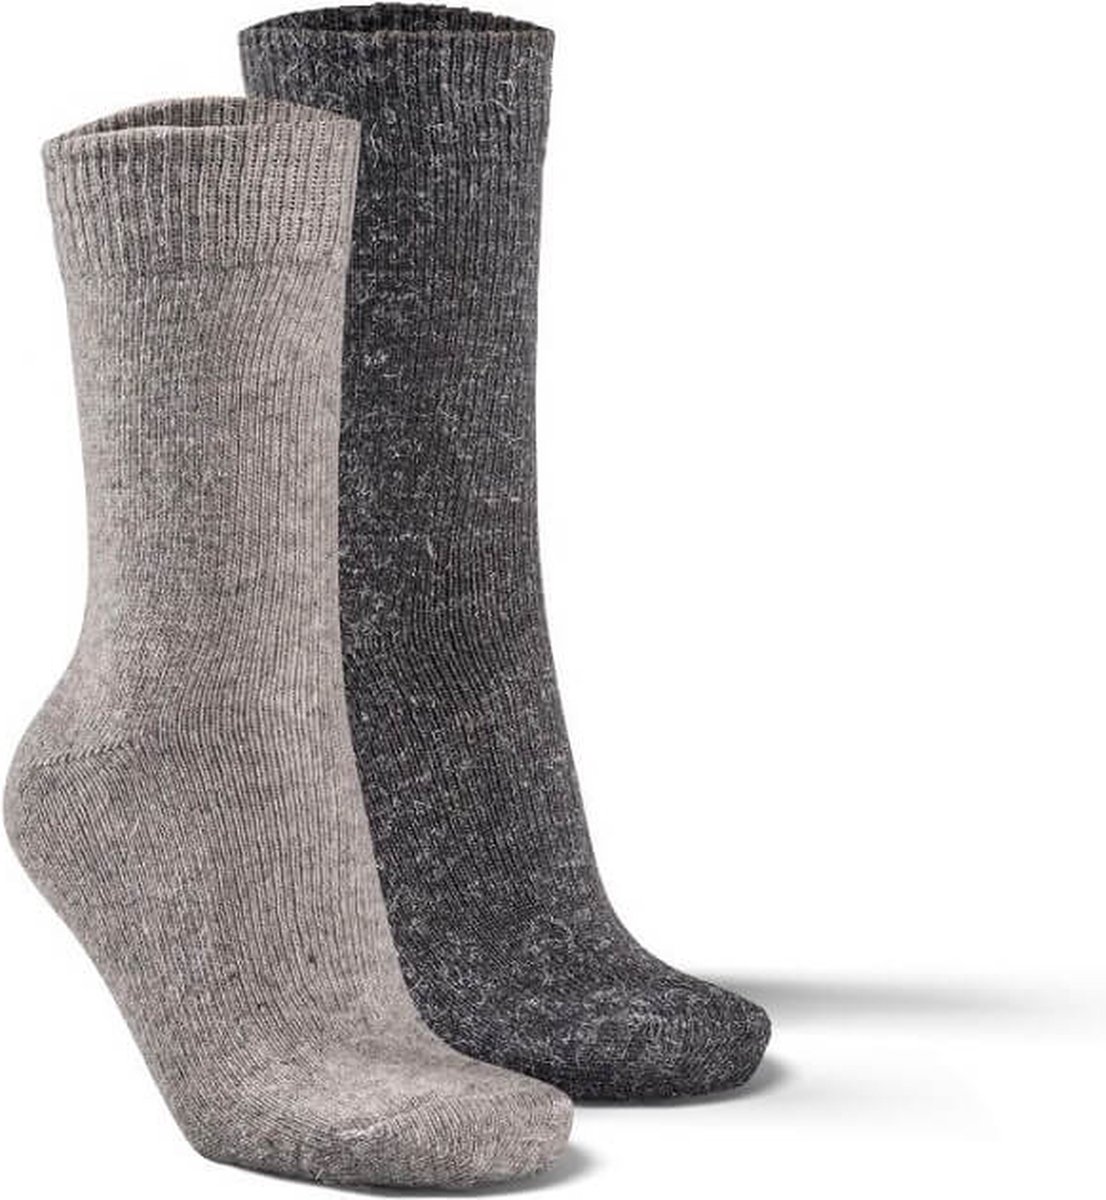 Fellhof Alpaca sokken maat 39-42 – grijs/antraciet – alpacawol – wollen sokken – warme sokken temperatuurregulerend – vochtregulerend – geurloos – ademend – comfortabel – zacht